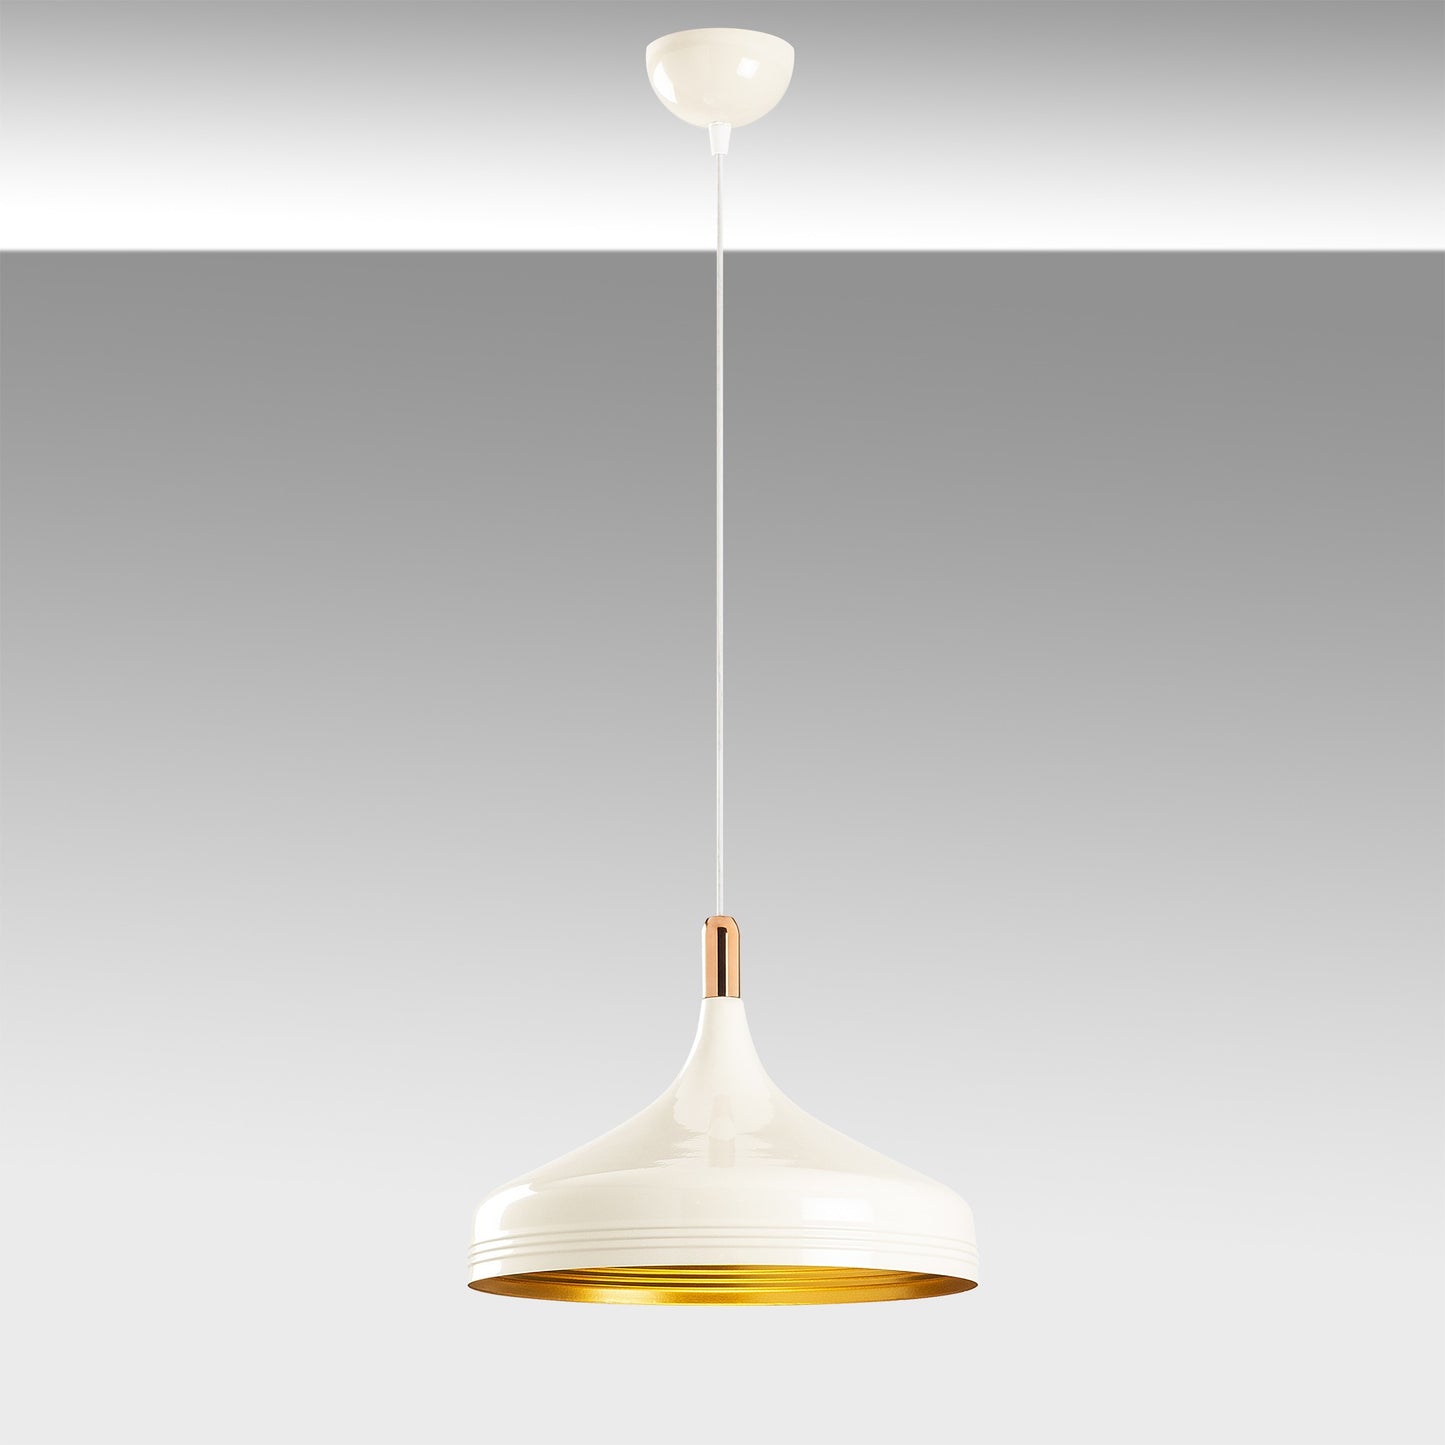 Loftlampe Saglam - 3723 - Hvid og guld/kobber